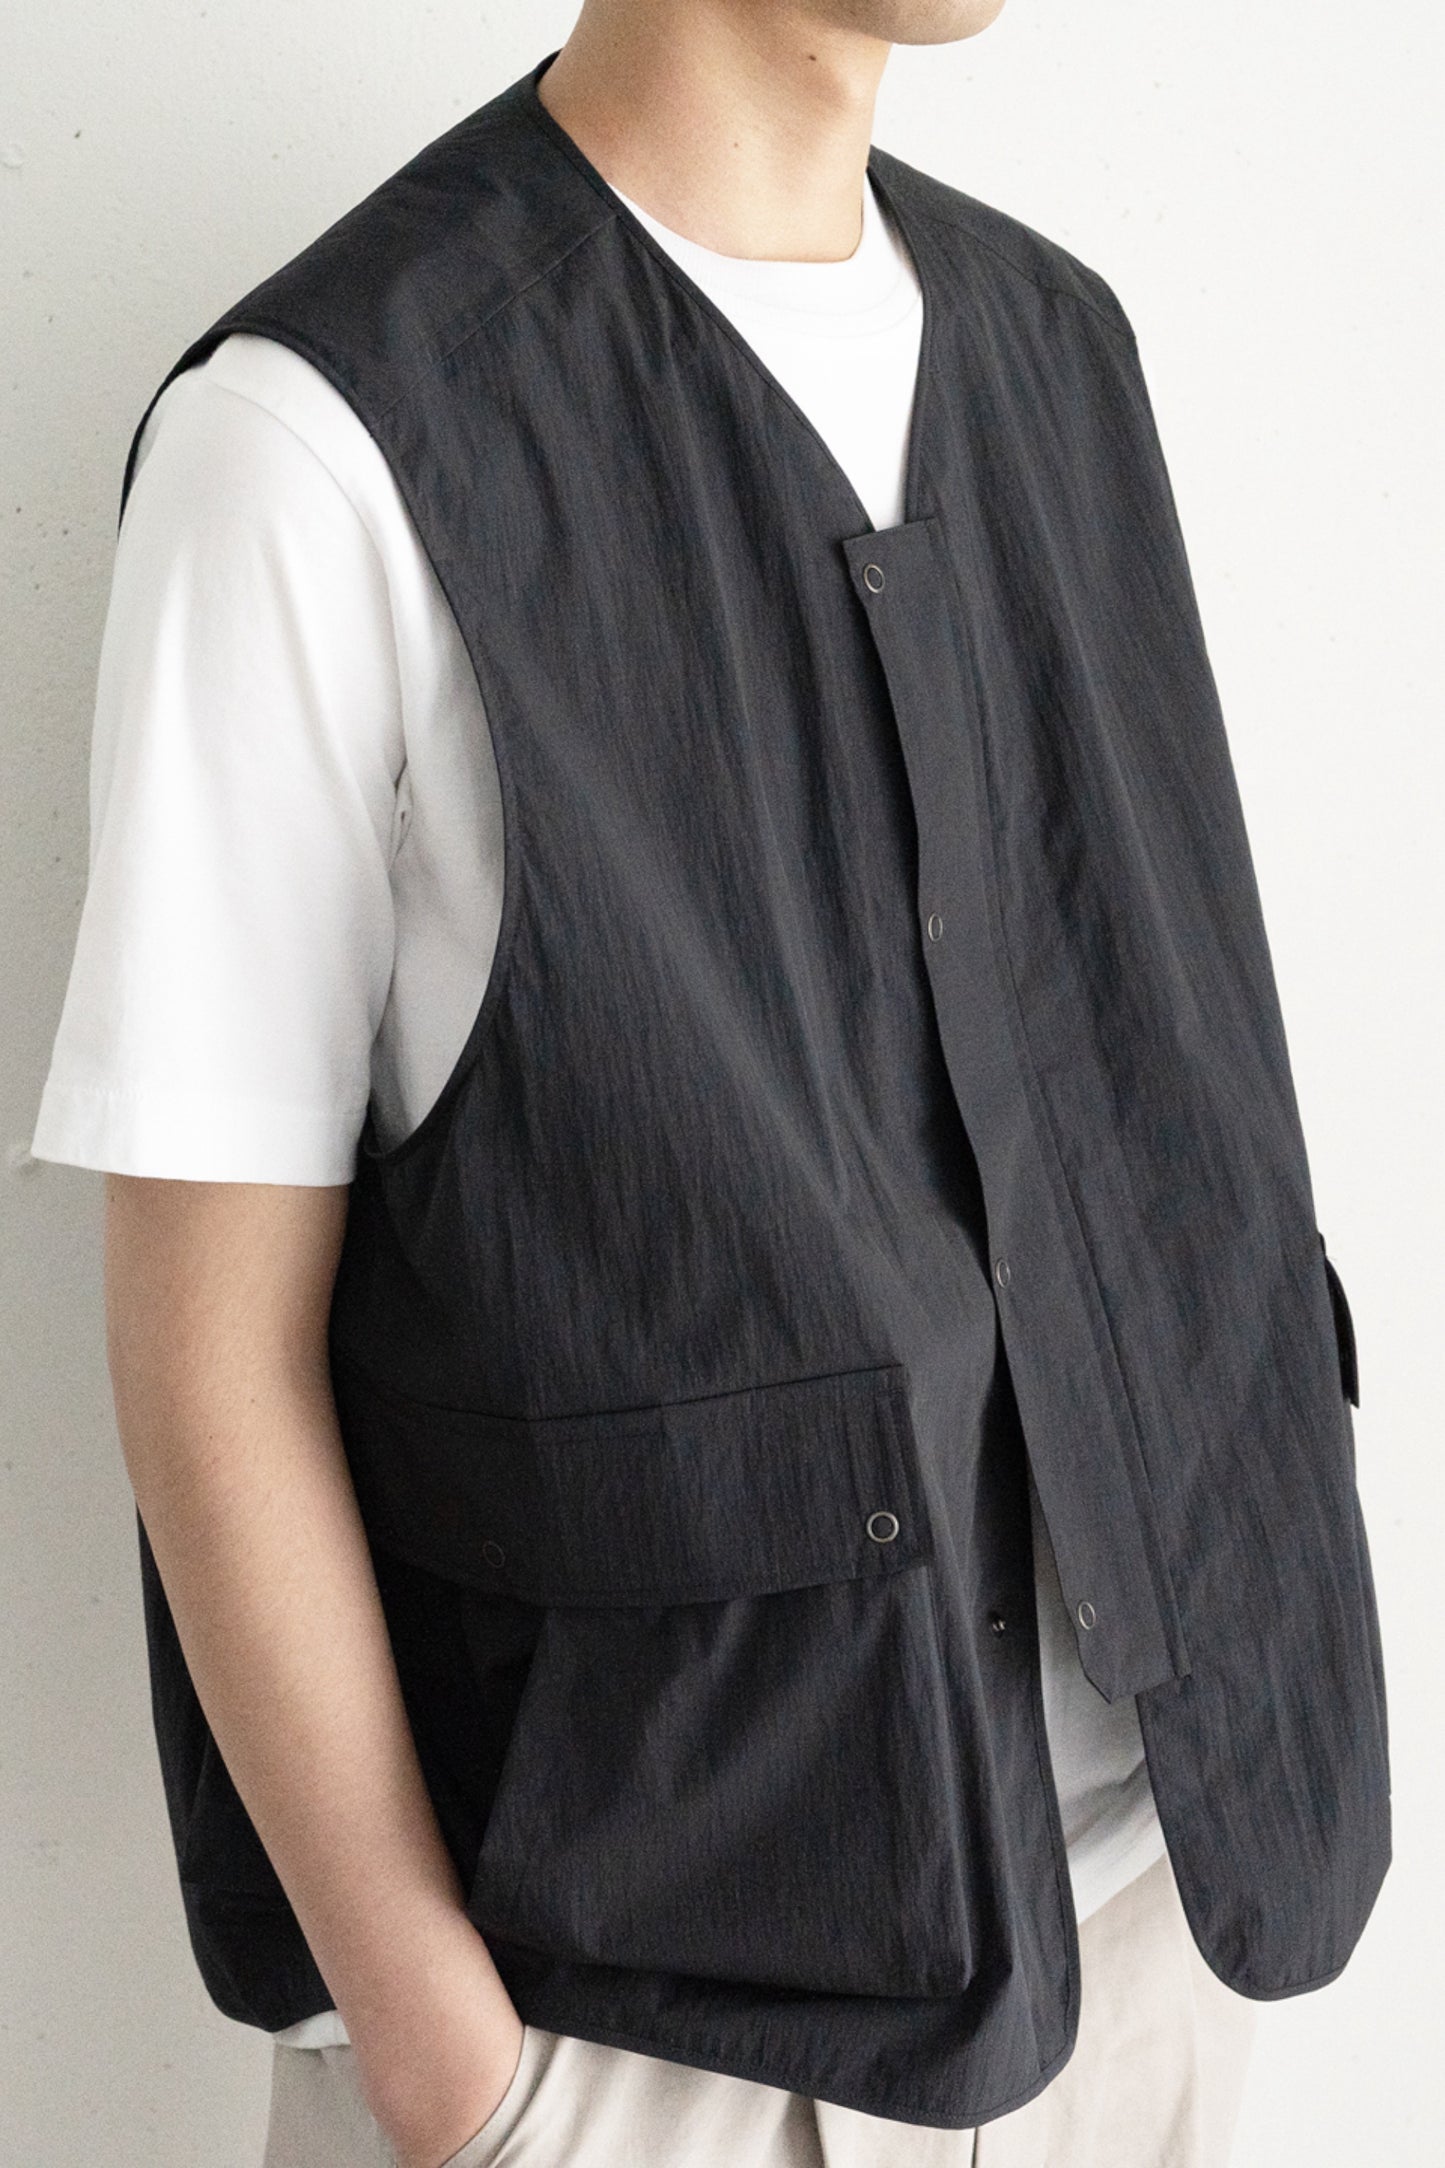 Still By Hand - Large Pocket Nylon Vest (Khaki Beige)